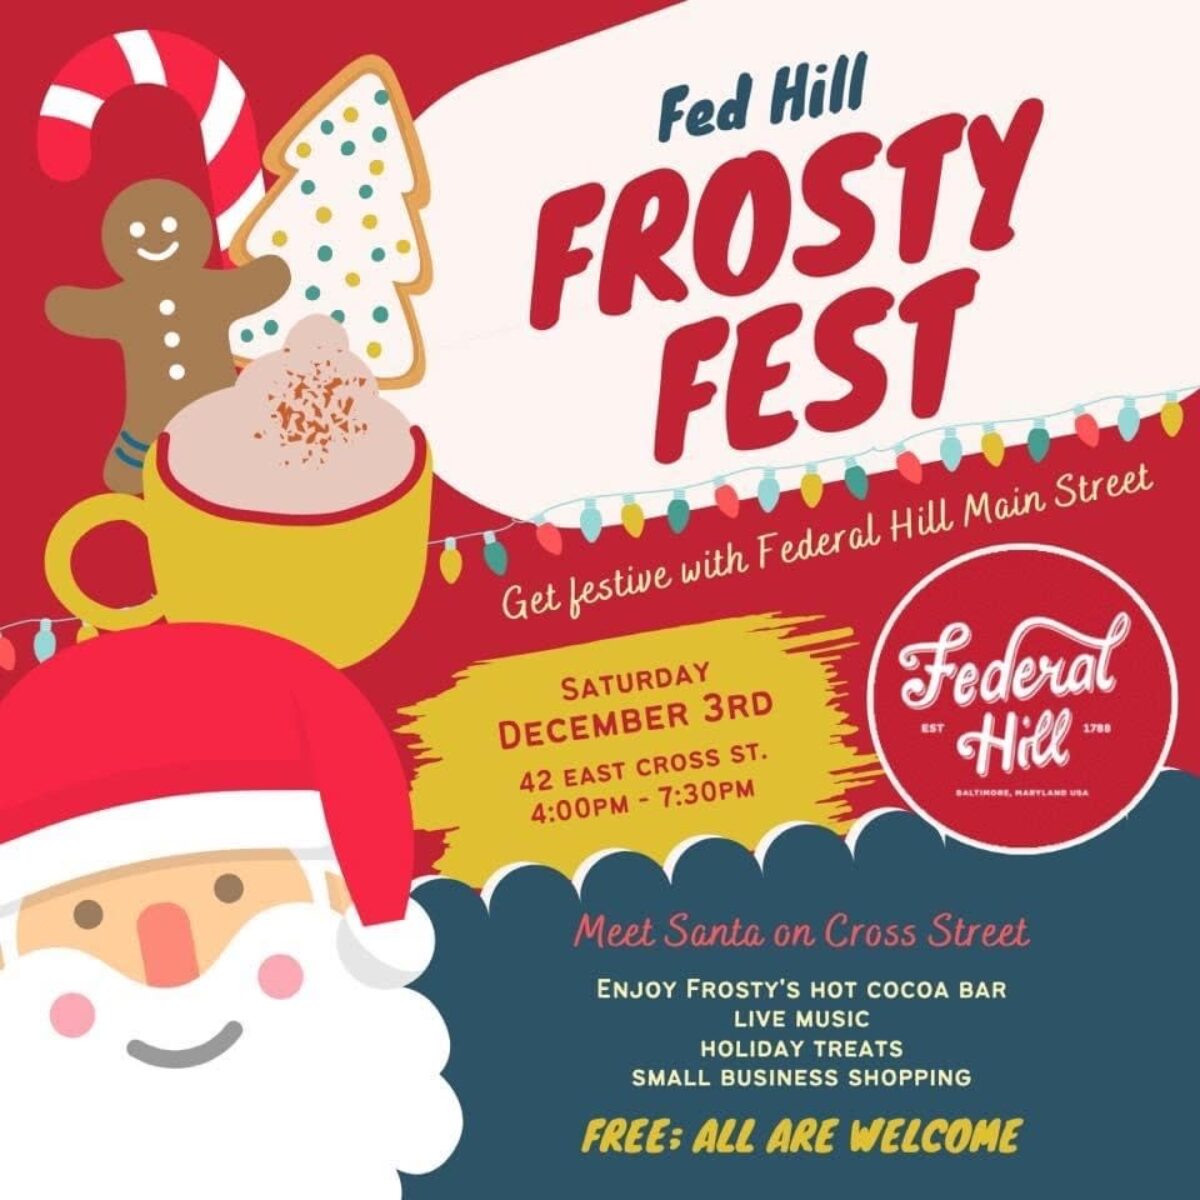 kubiske Forbrydelse eksekverbar FedHill Frosty Fest | Visit Baltimore